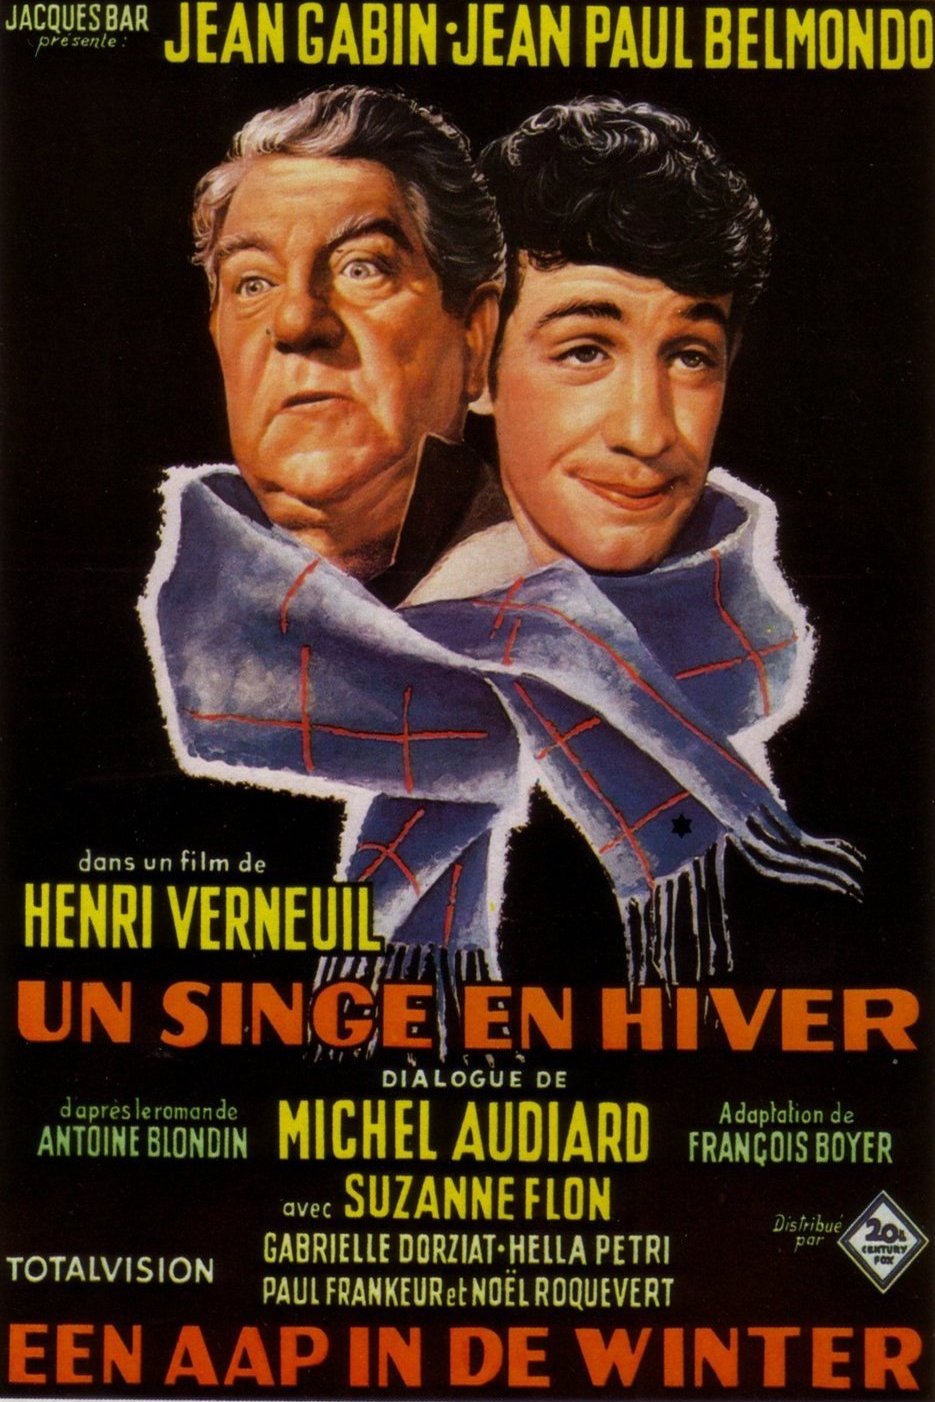 Poster of the movie Un singe en hiver